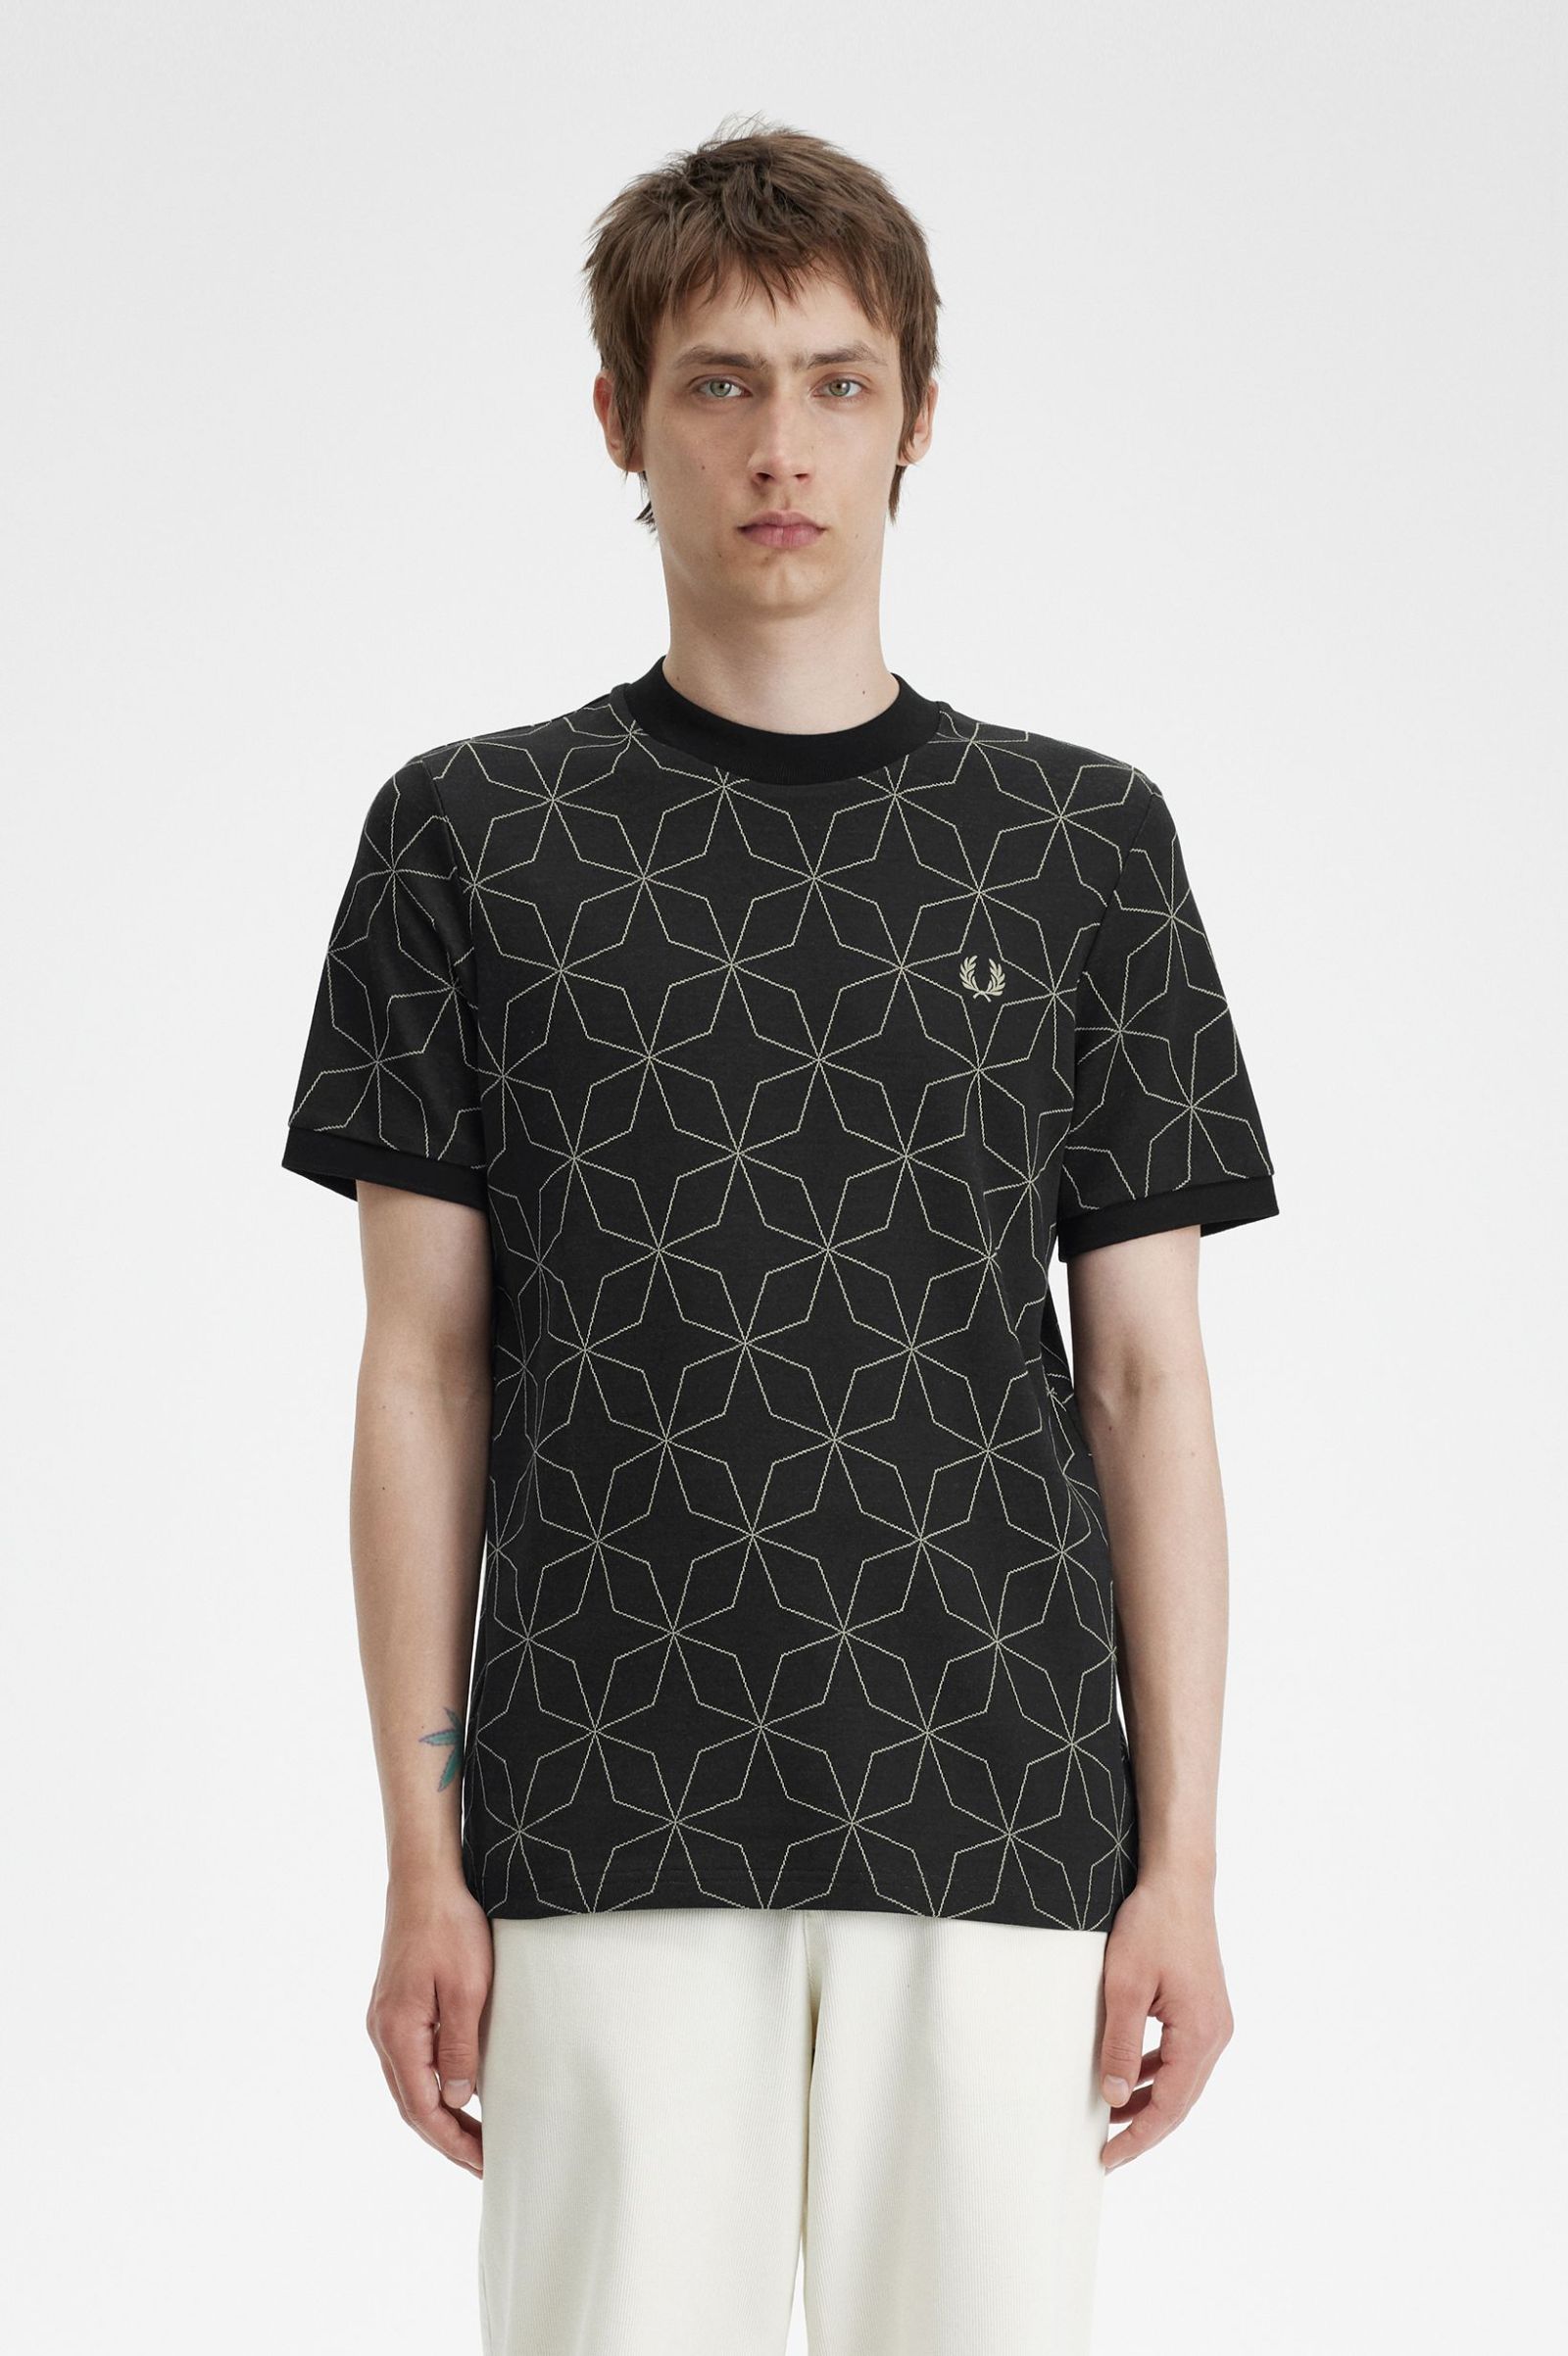 Geometric T-Shirt - Black | Men's T-Shirts | Designer T-Shirts for Men ...